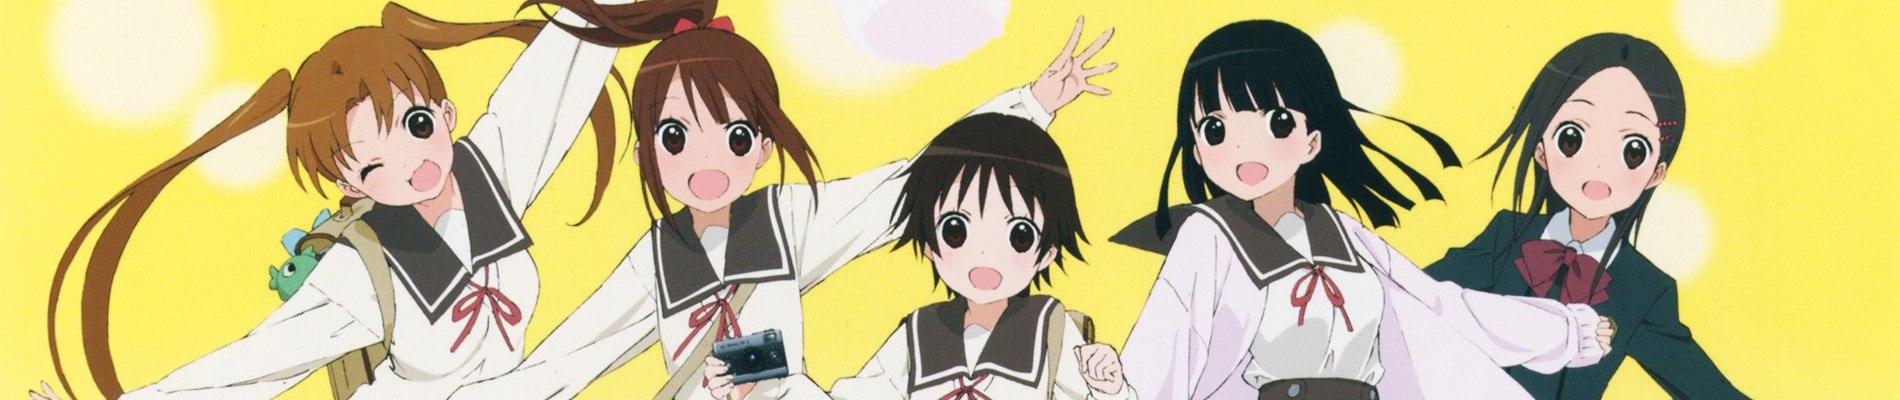 Yama no Susume: Second Season Specials · AniList